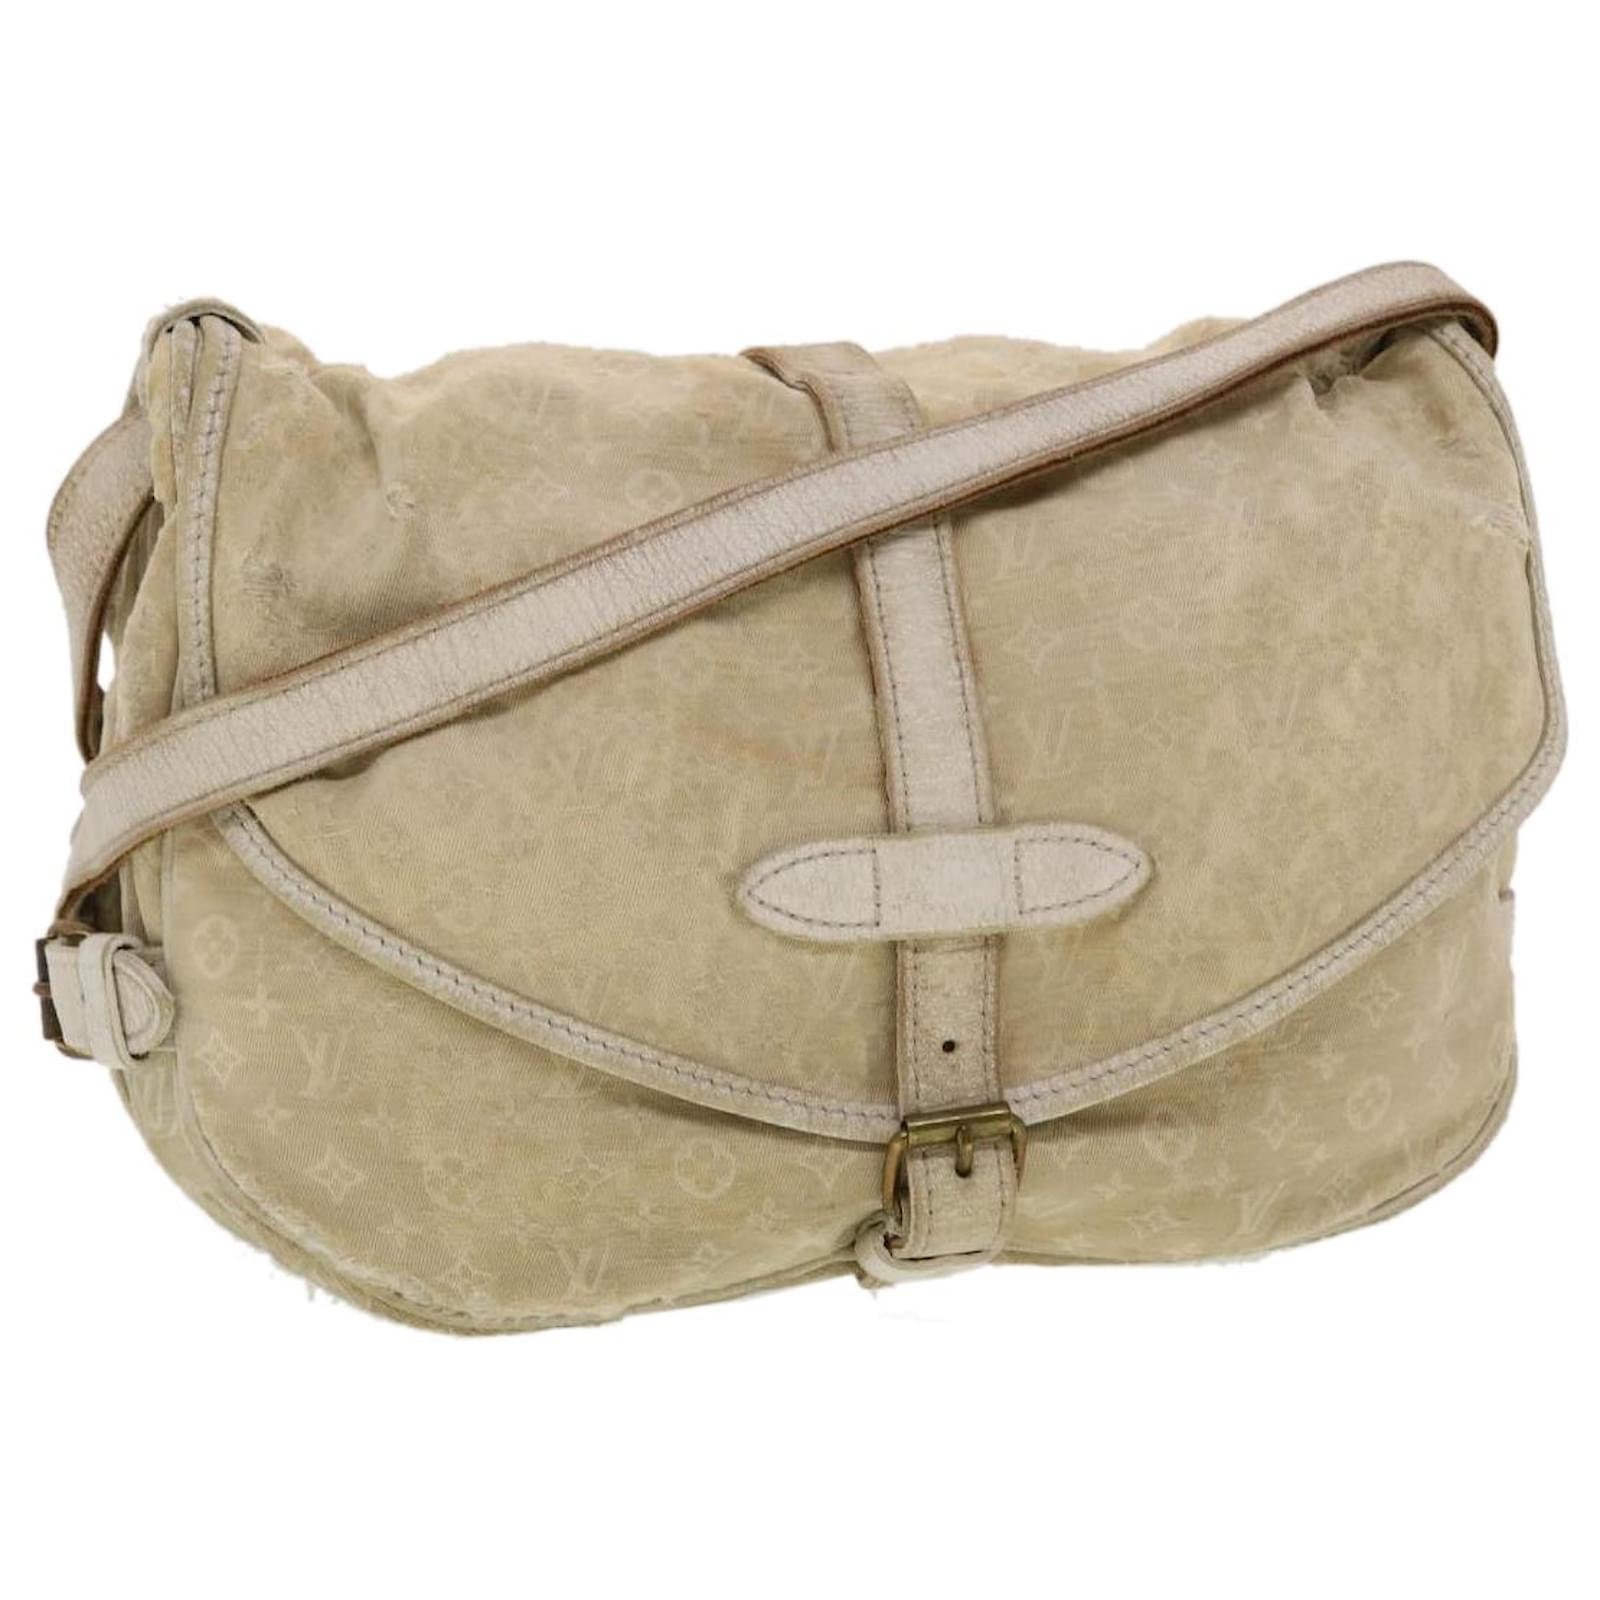 Louis Vuitton Saumur Handbag Mini Lin 30 Brown